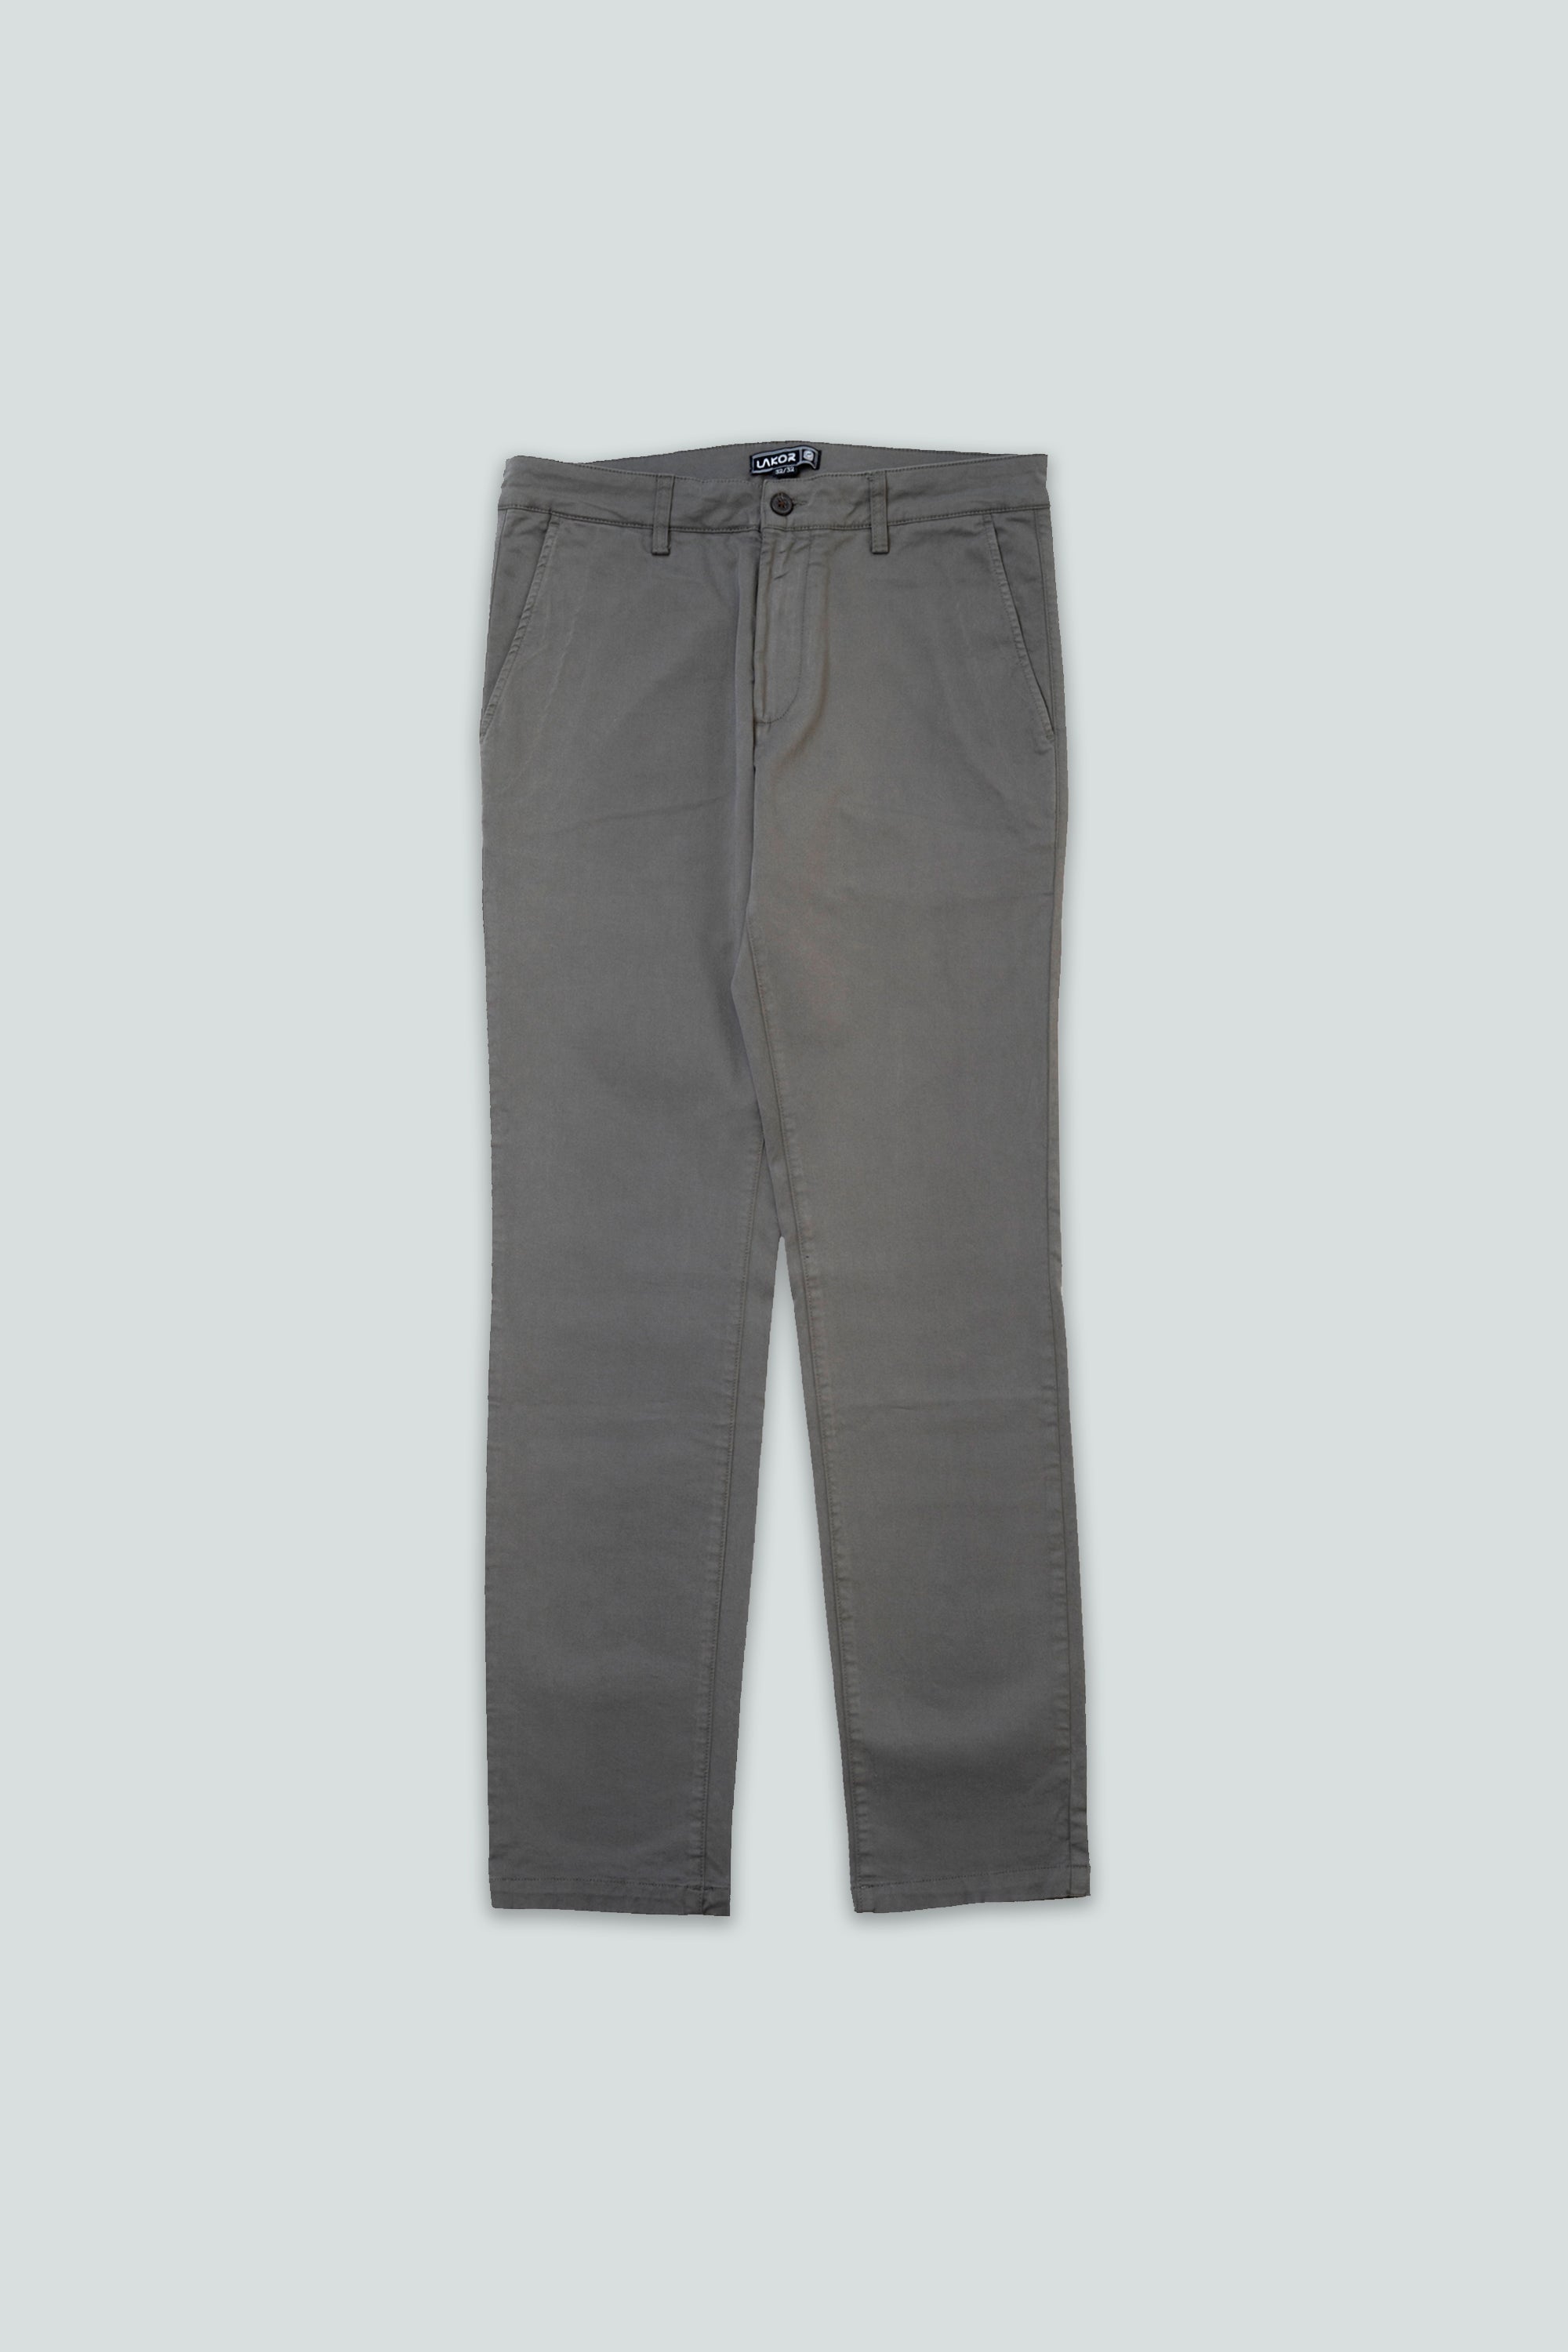 Chino Pants (Grey)